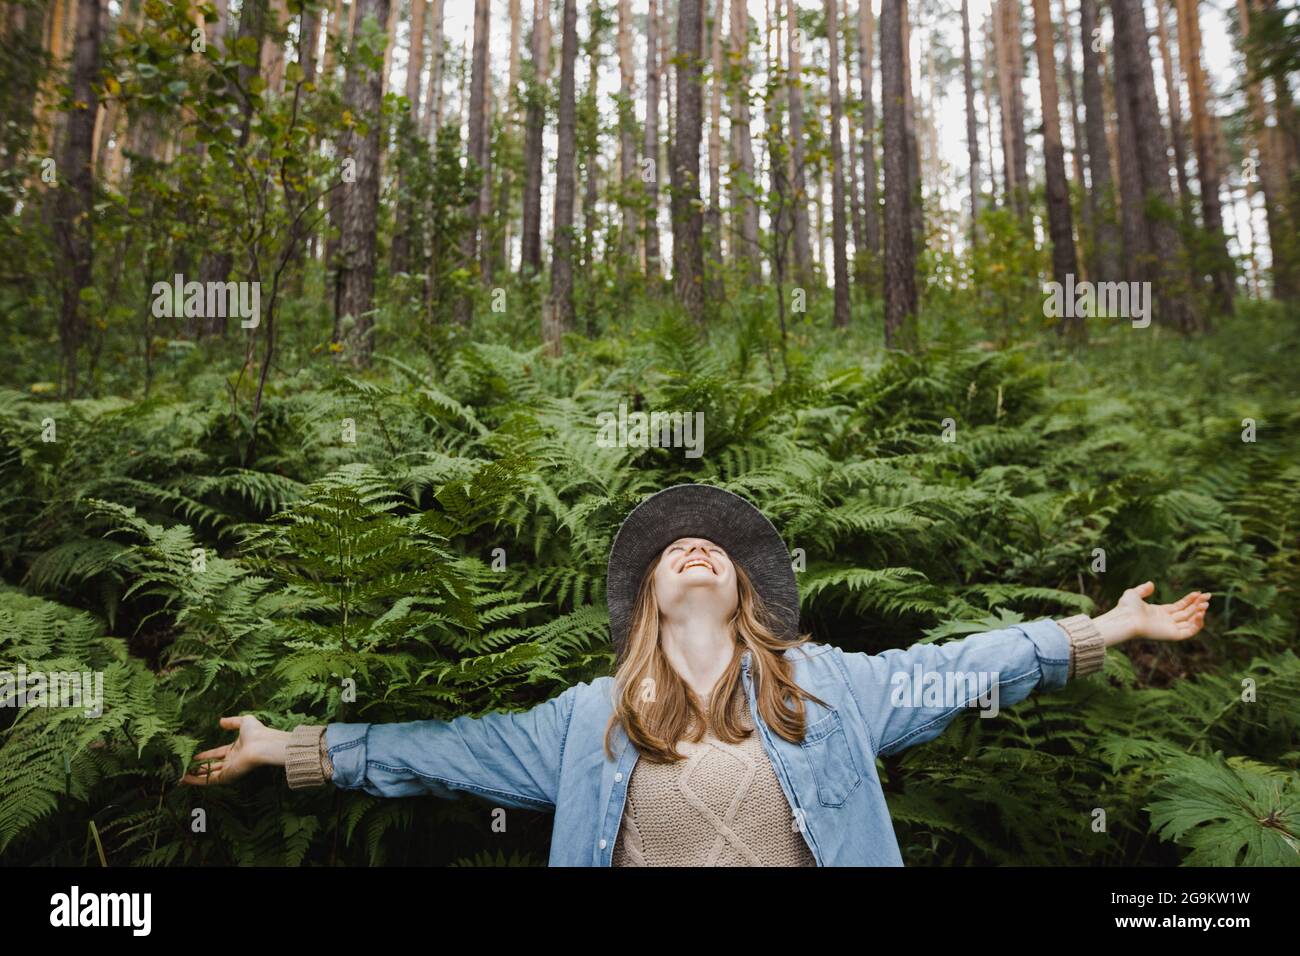 Femmina positivo con mani allungate in felce abbondanti che crescono in boschi con pini alti Foto Stock